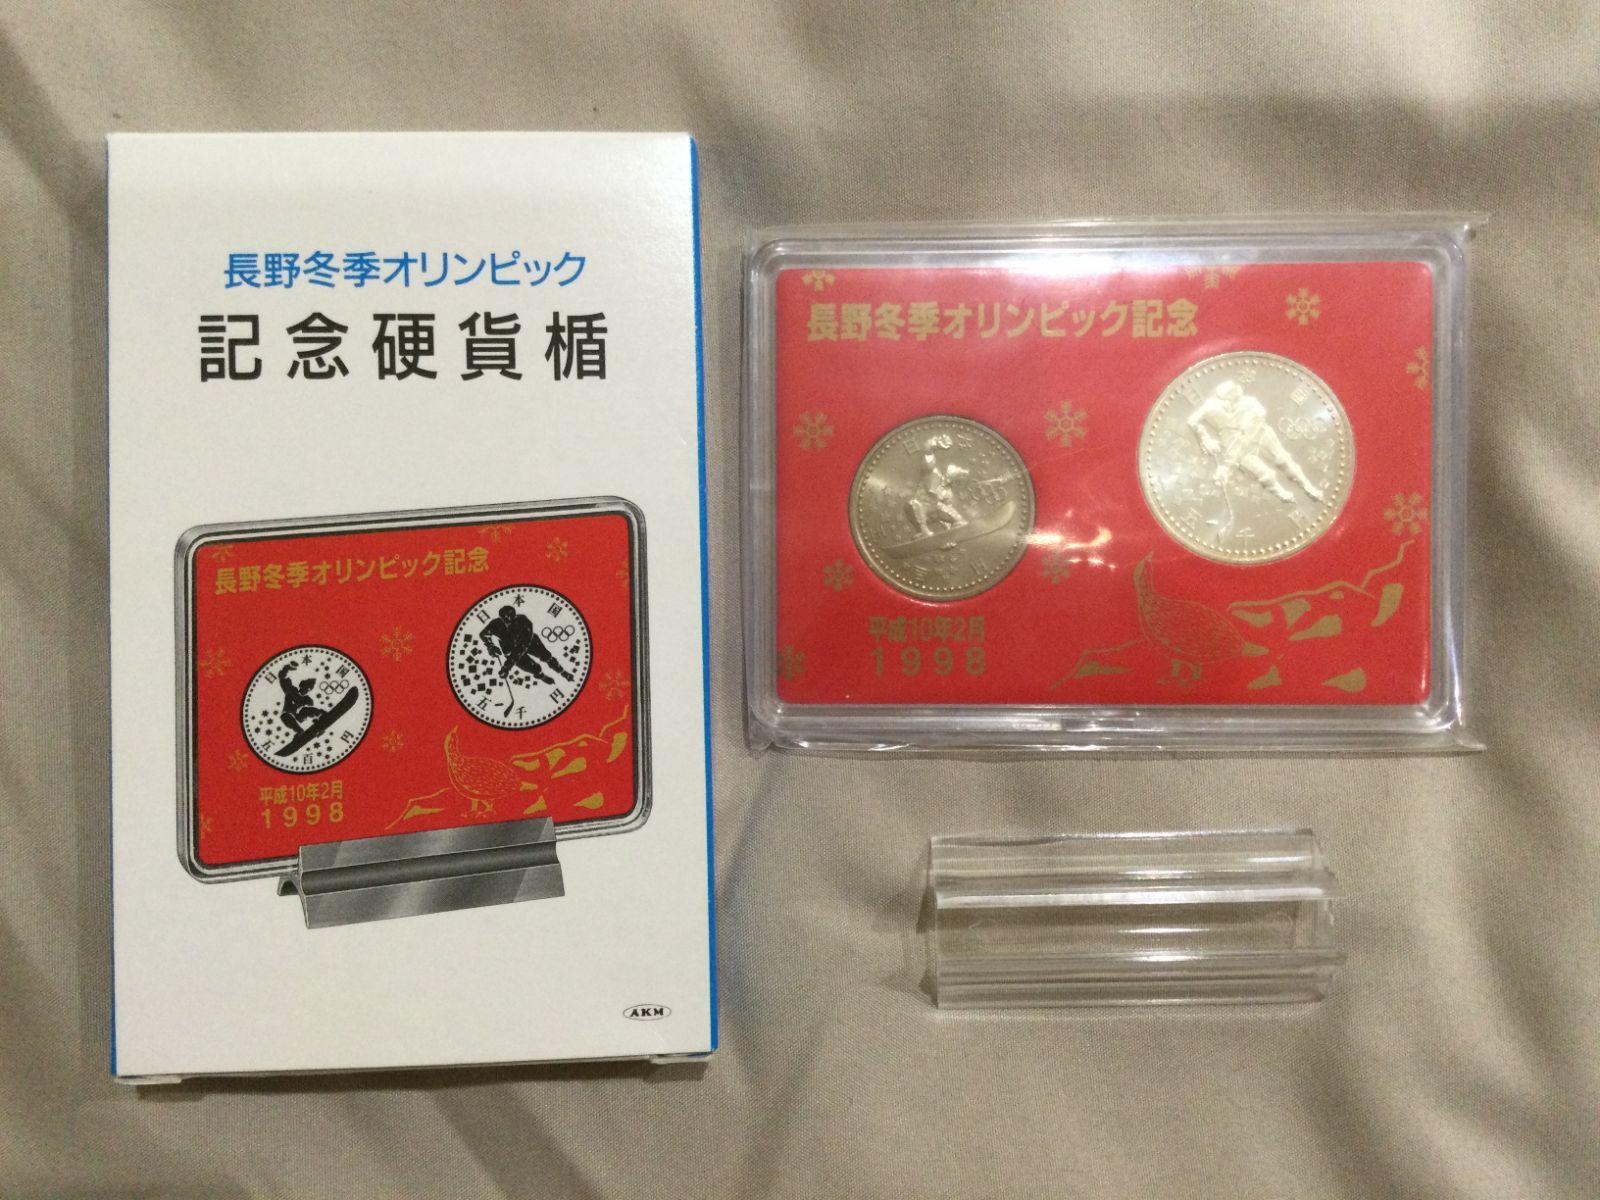 1998年 長野冬季オリンピック 記念硬貨 500円 プルーフ硬貨